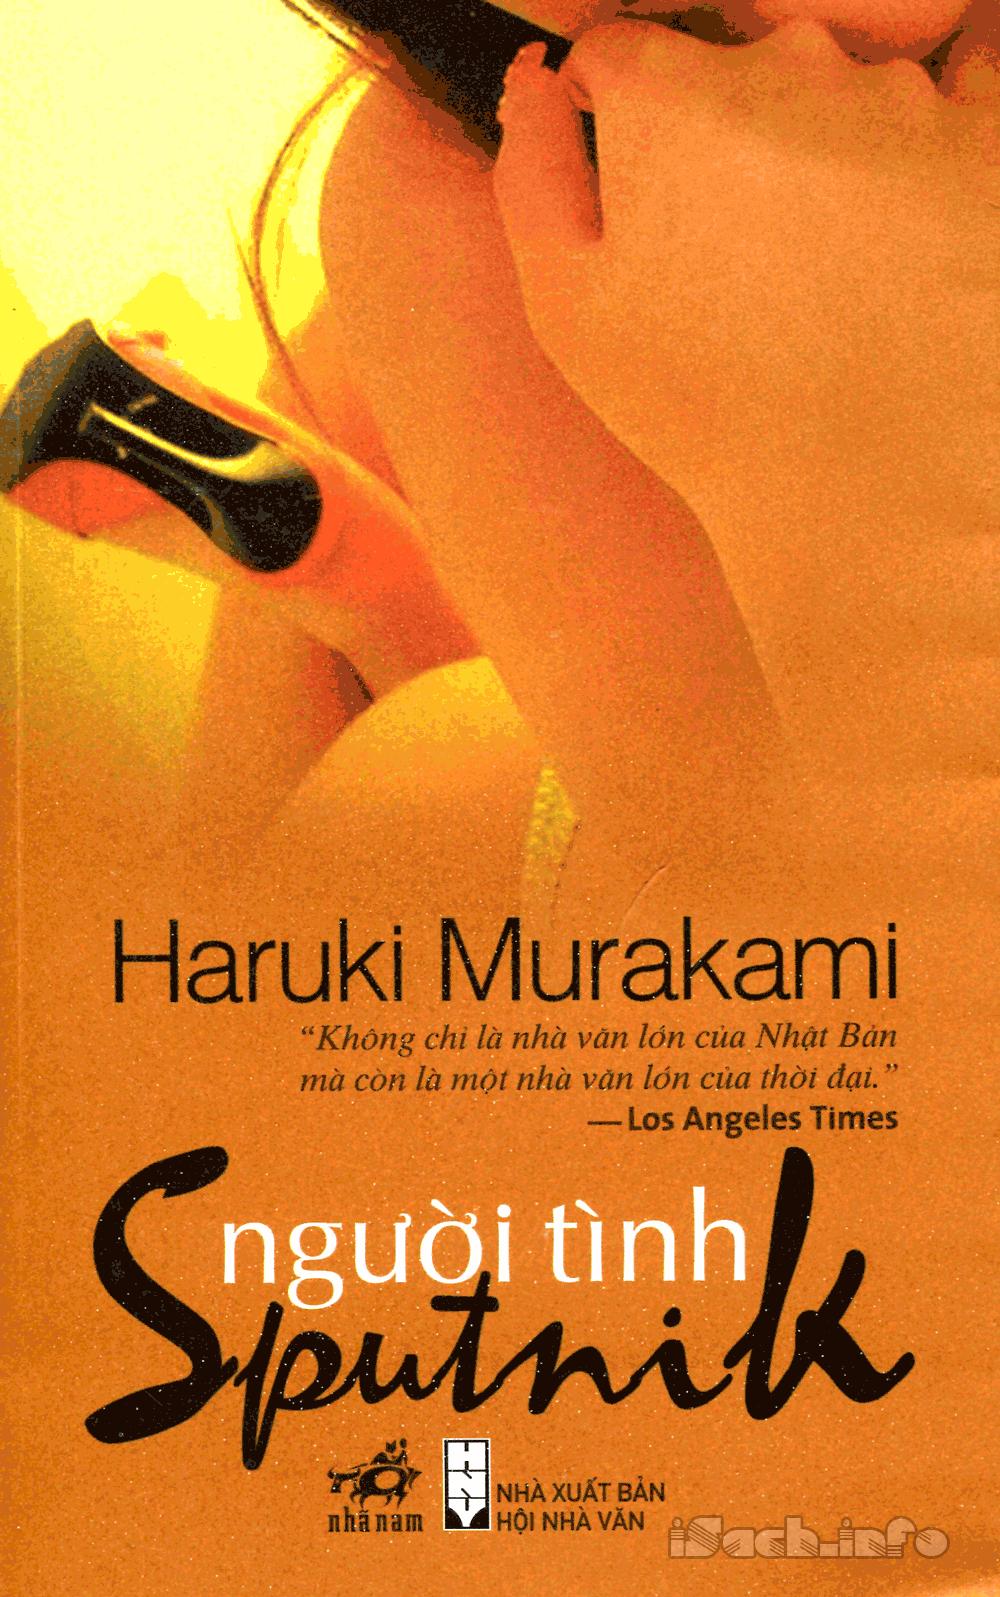 La ragazza dello Sputnik by Haruki Murakami